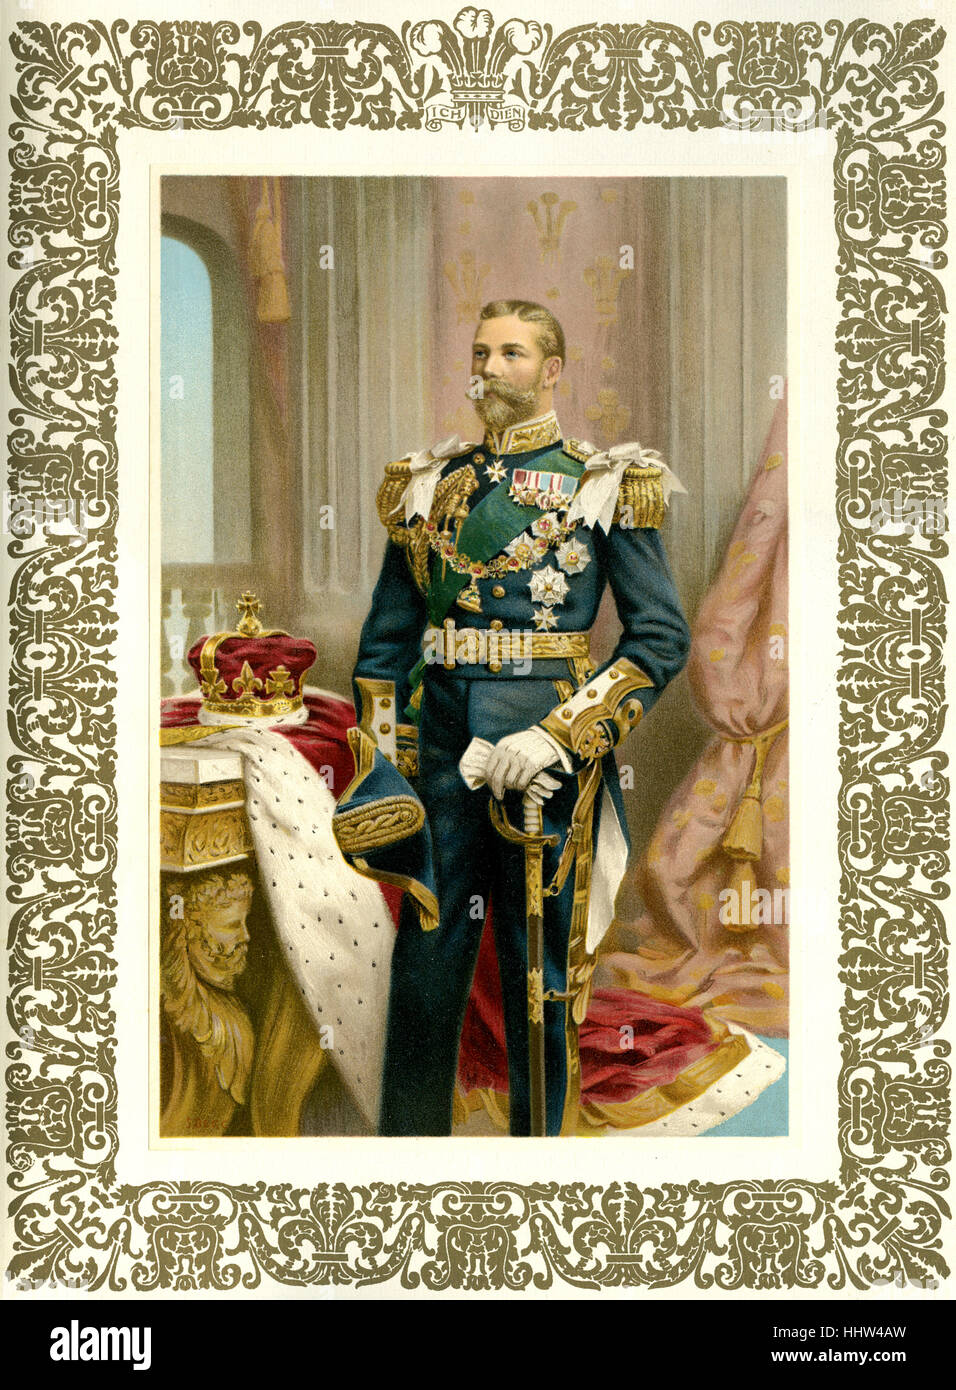 En el futuro, el rey Jorge V de Inglaterra, como el Príncipe de Gales en 1902. (1865 - 1936, coronado en 1911). Foto de stock